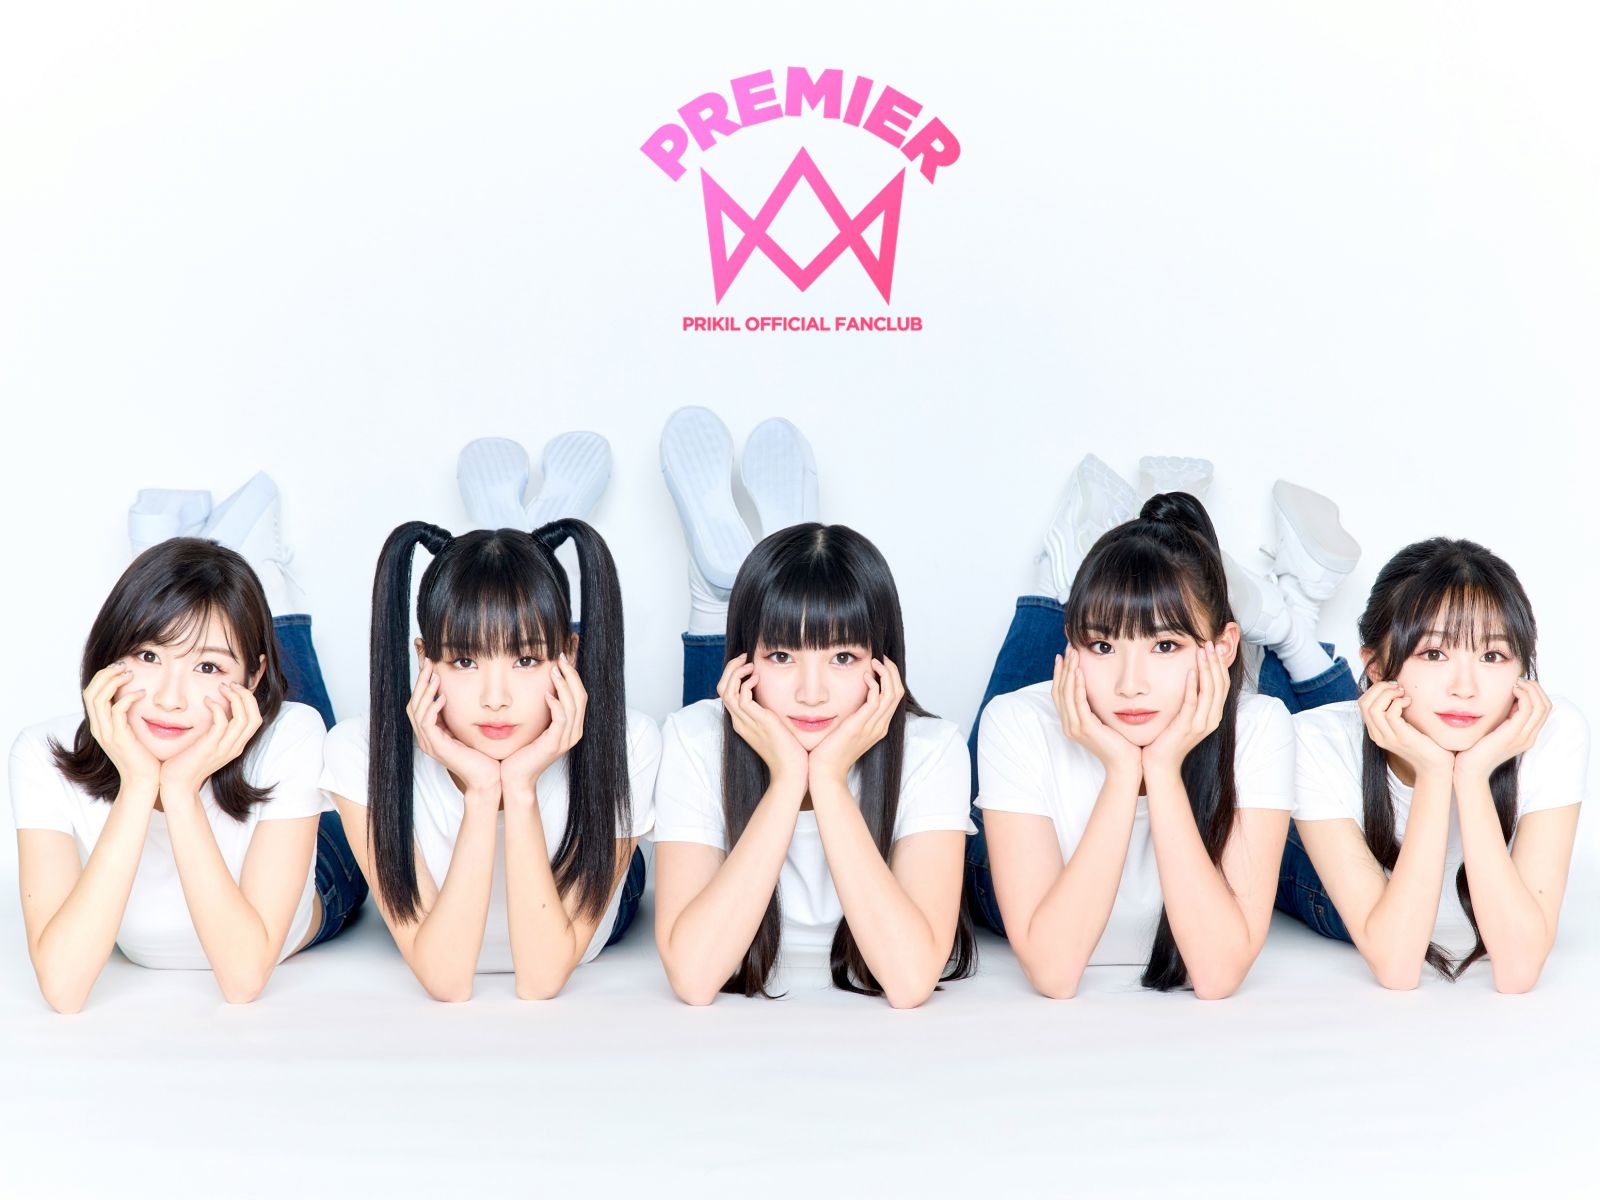 日本テレビ サバイバル番組「Who is Princess？」出身！5人組ガールズグループ「PRIKIL」オフィシャルファンクラブ『PREMIER』オープンいたしました。